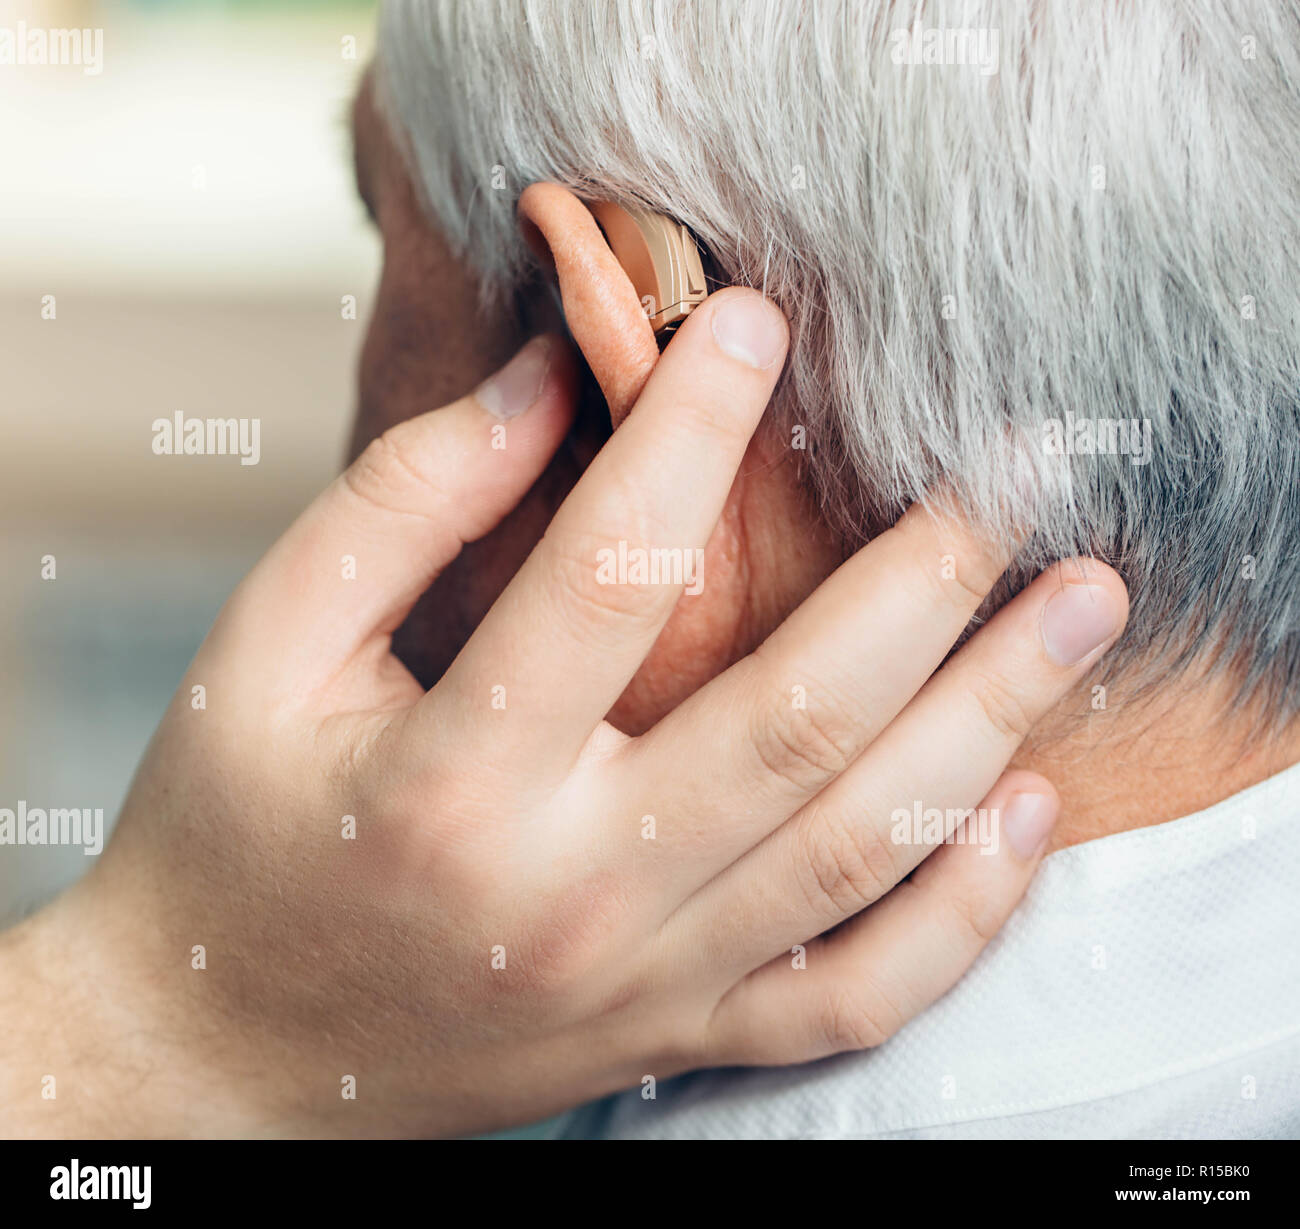 Der Patientin in der Einrichtung das Hörgerät unterstützt. Behandlung der Anhörung von älteren Menschen mit einem Hörgerät. Stockfoto